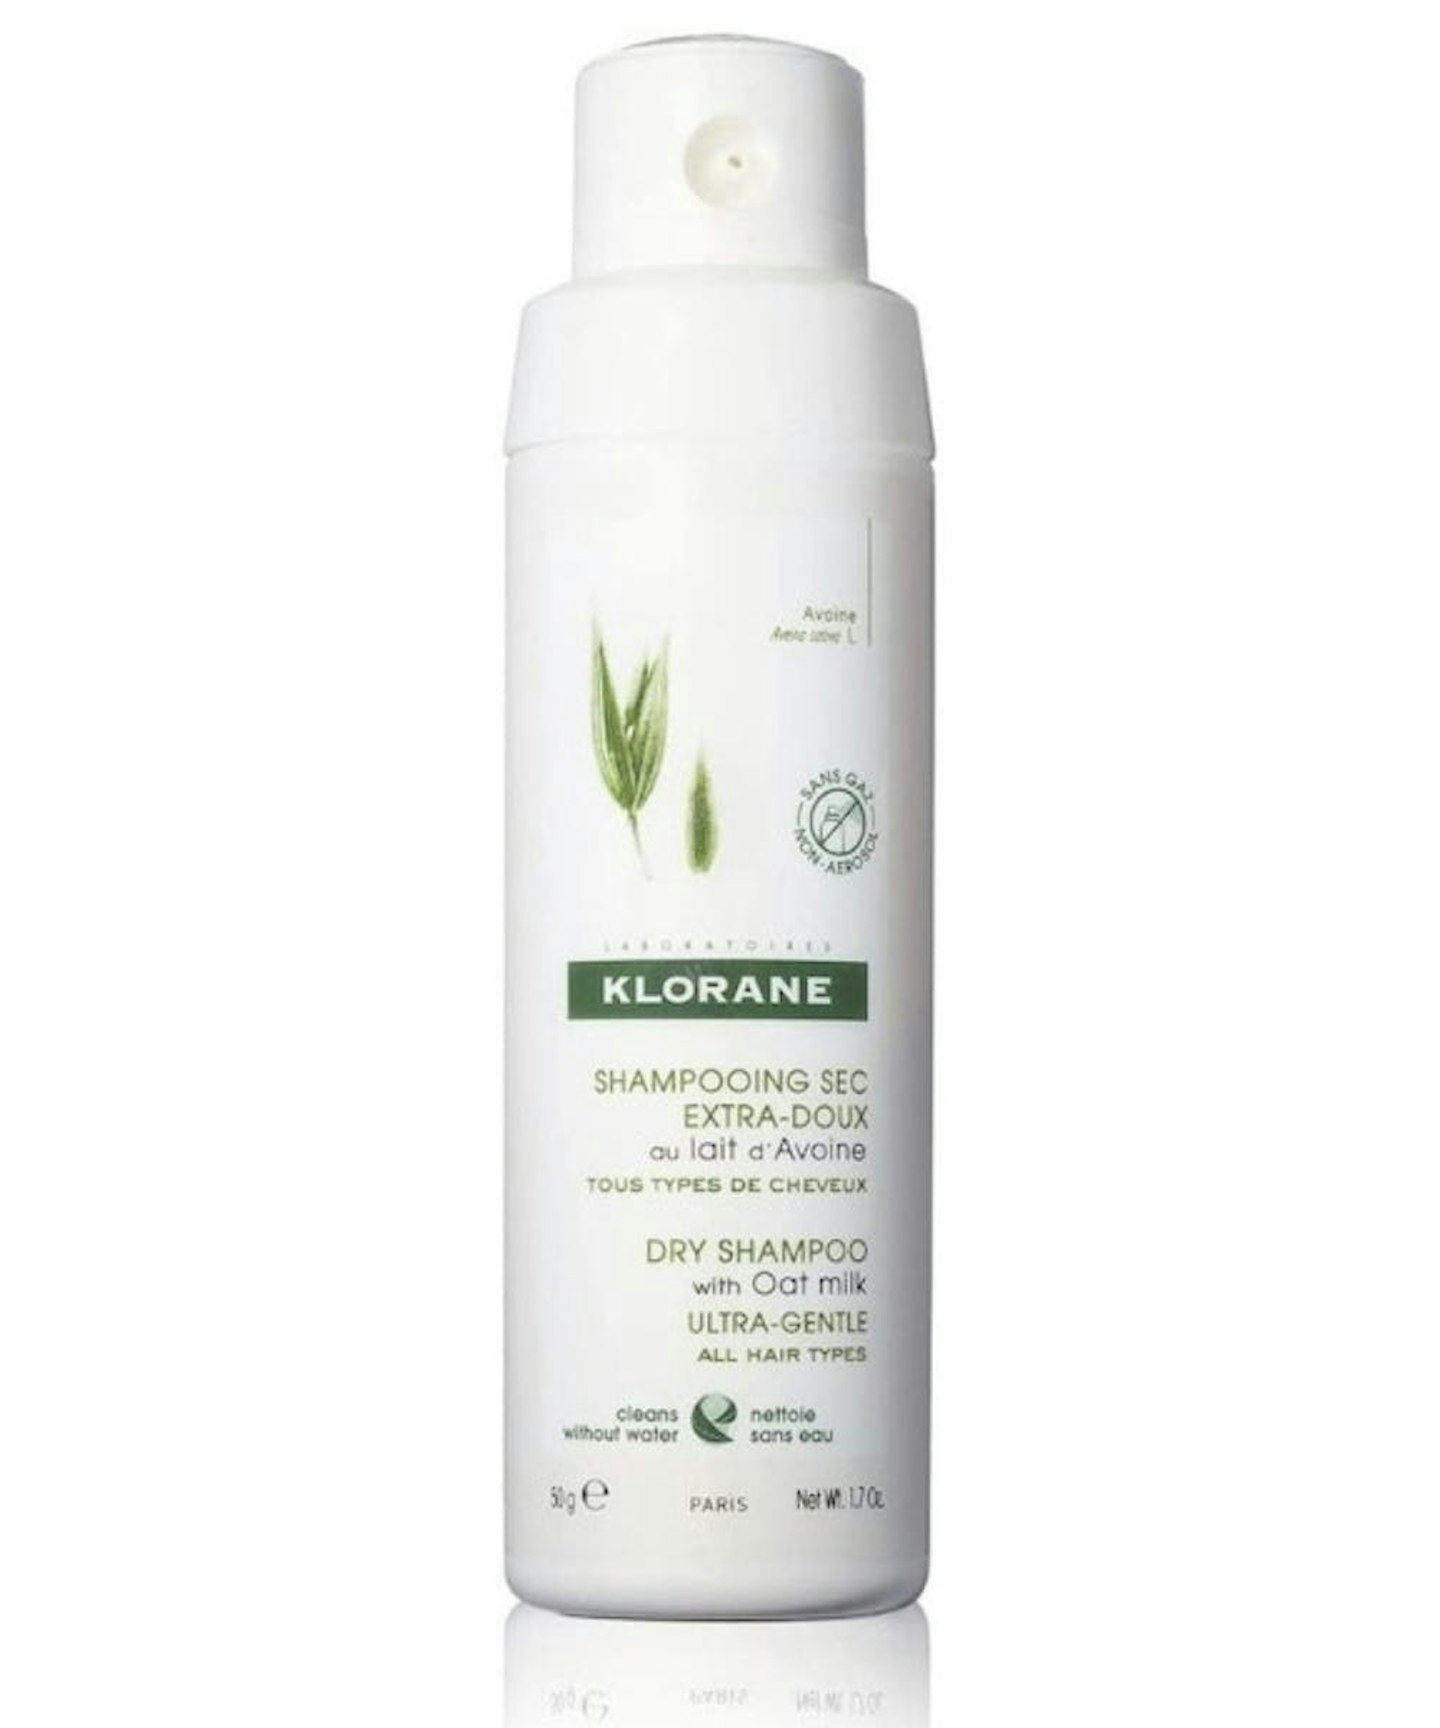 Klorane Eco-friendly Dry Shampoo with Oat Milk 50g